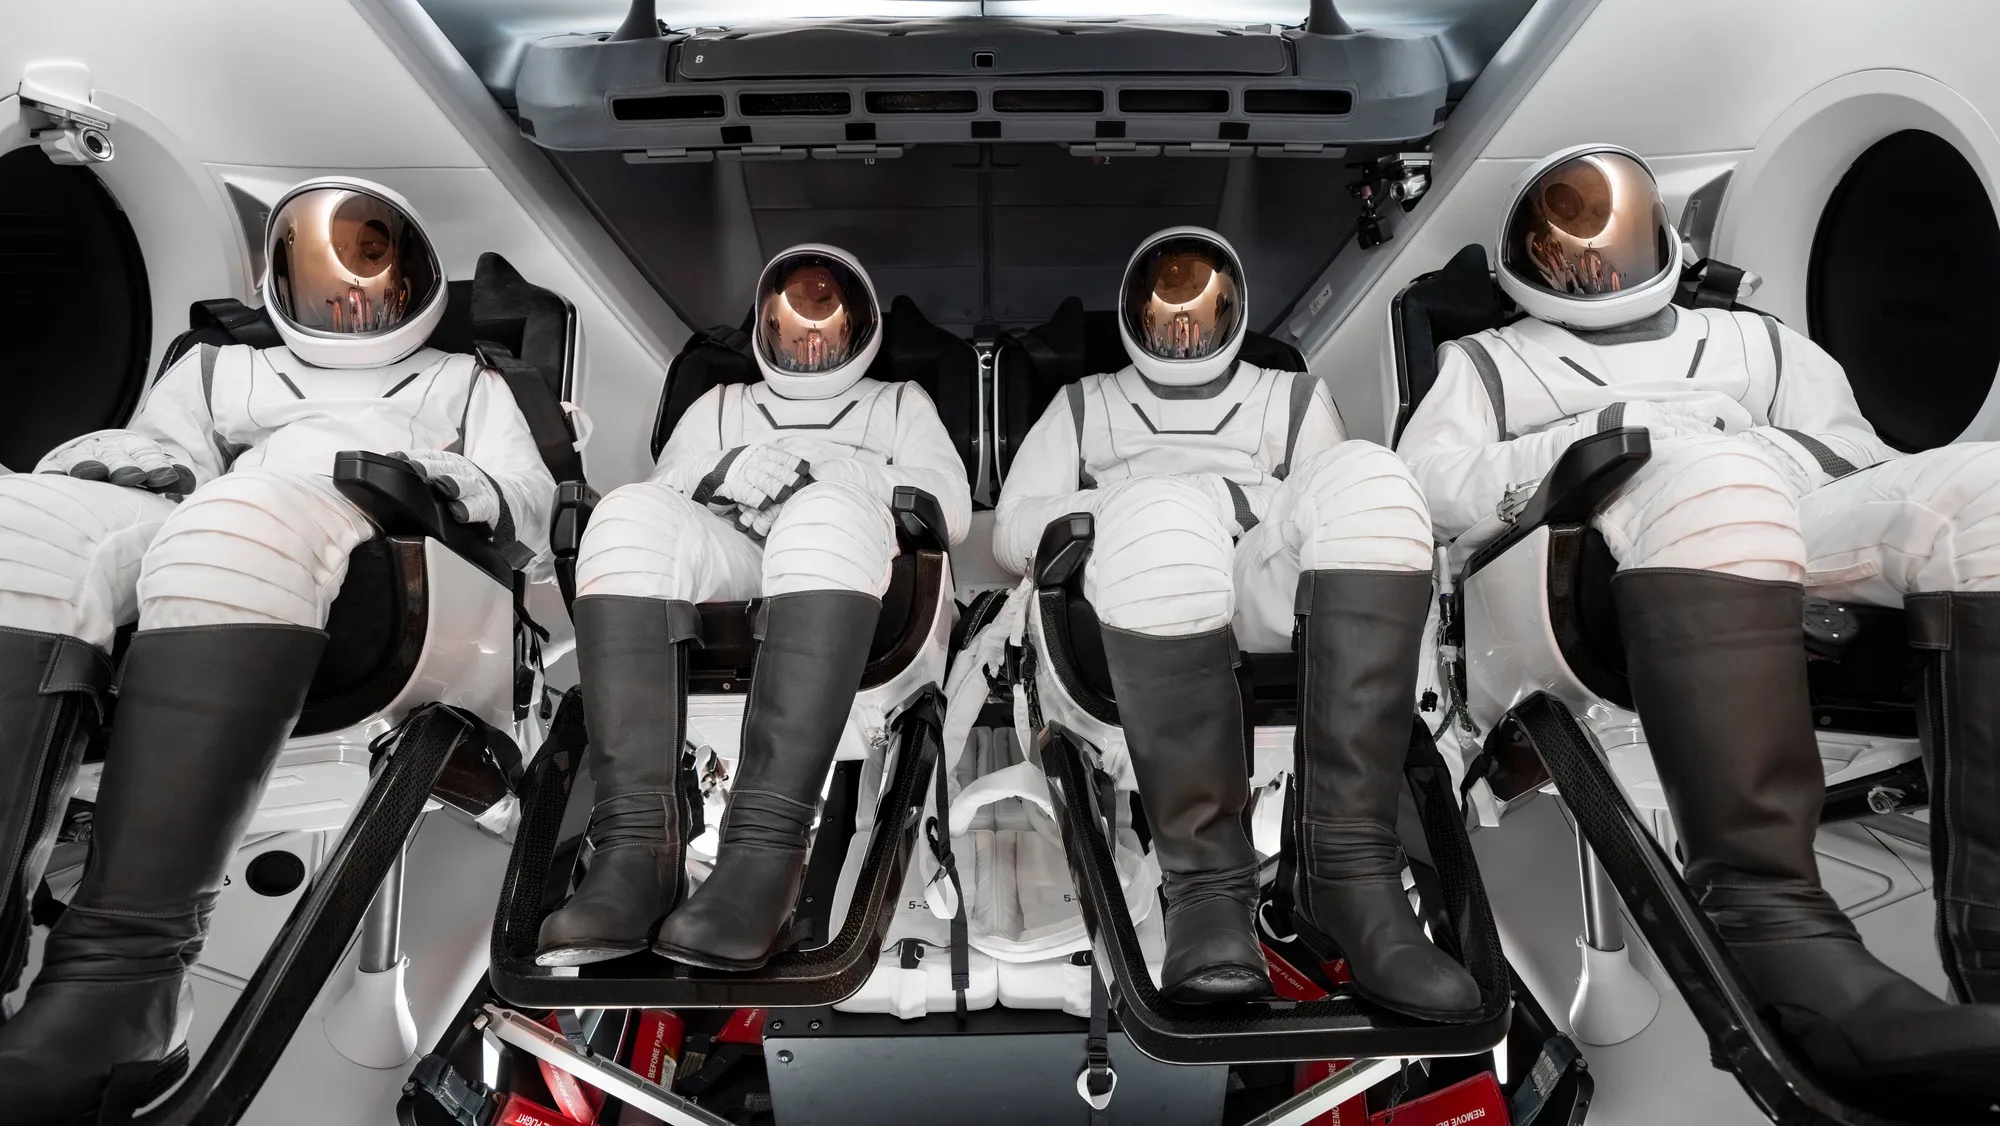 ポラリス・ドーンのミッションが近づく中、SpaceXがEVAスーツのデザインを発表